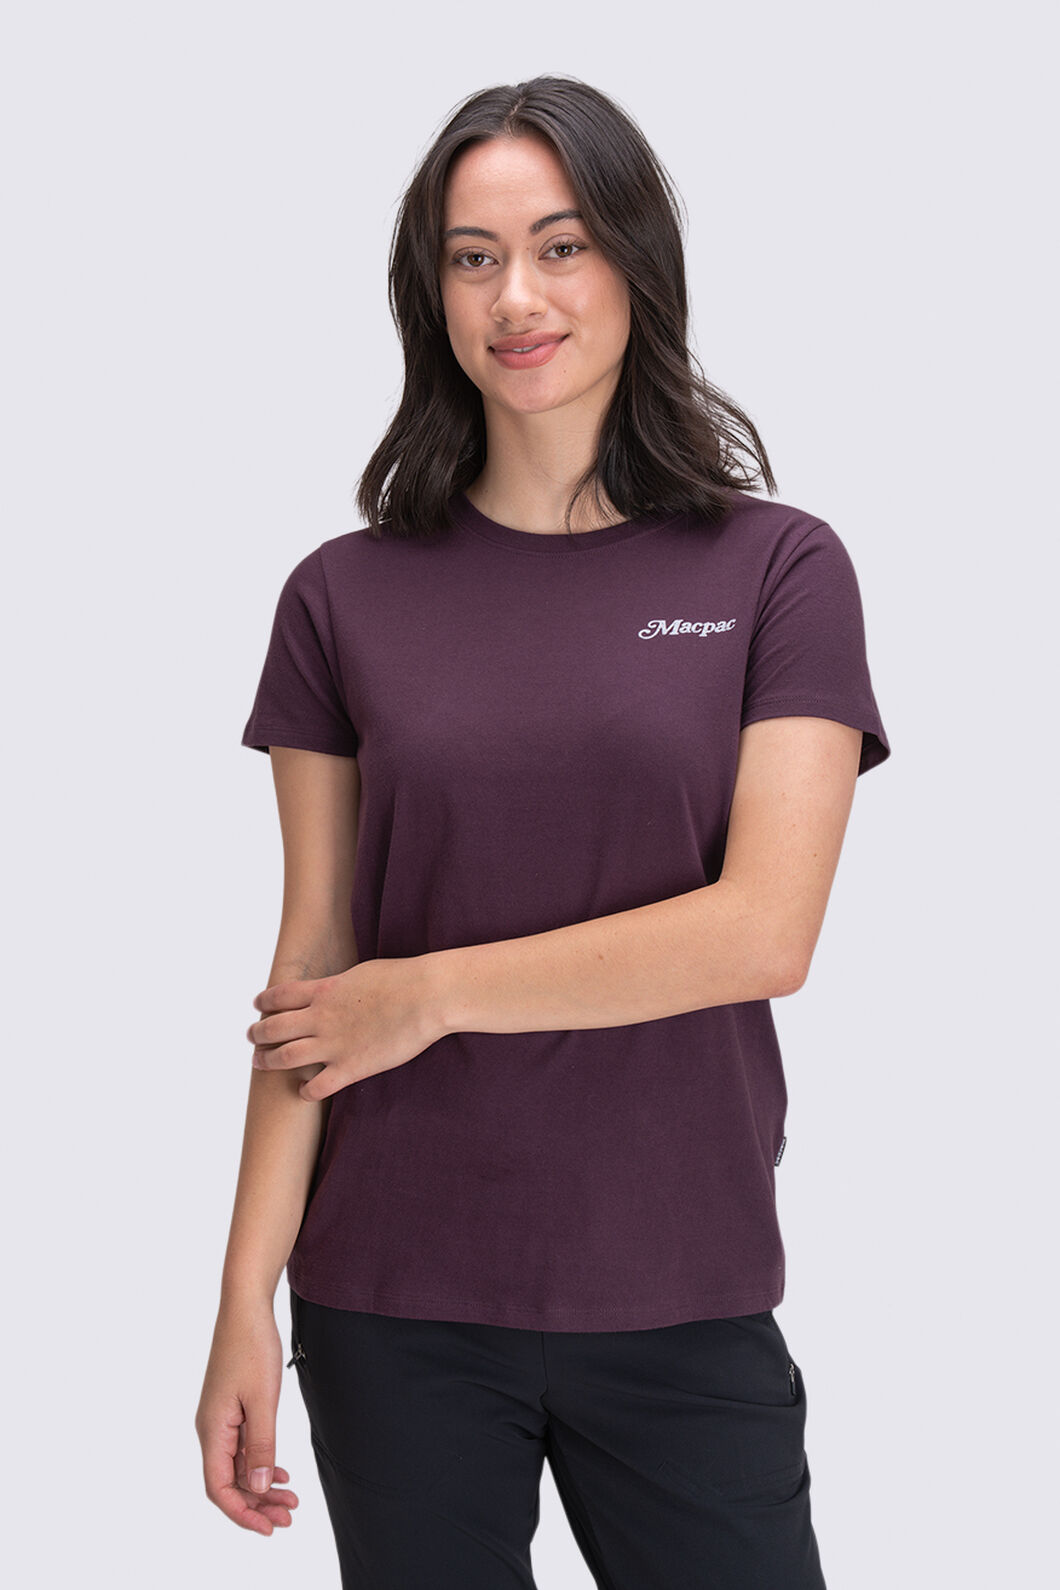 Macpac Women's Vista T-Shirt | Macpac